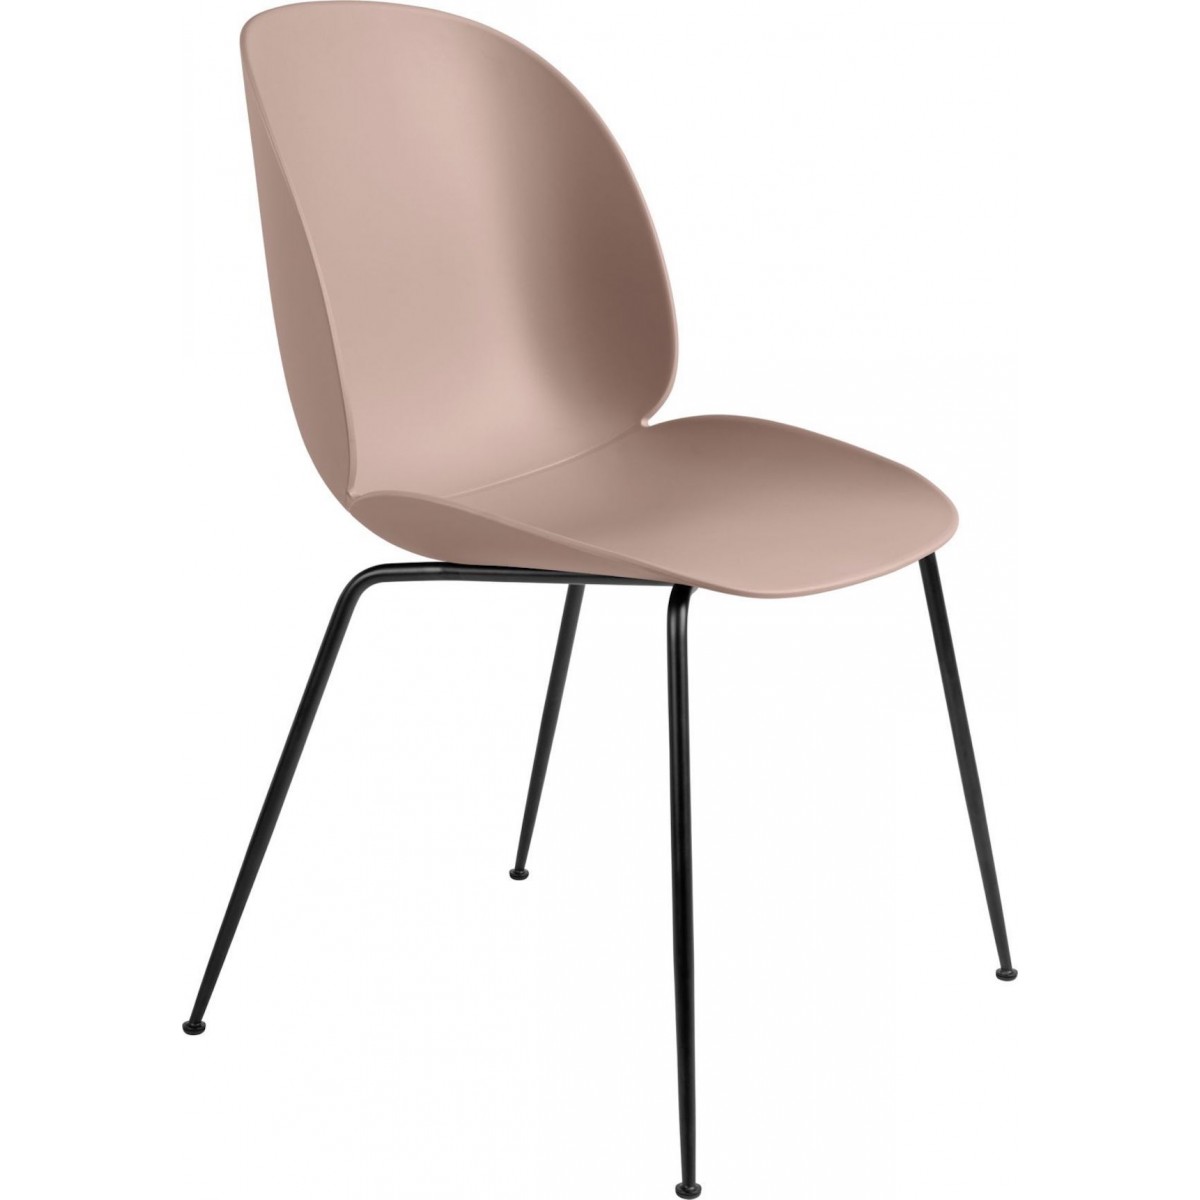 Coque rose doux - base noir mat - chaise Beetle plastique